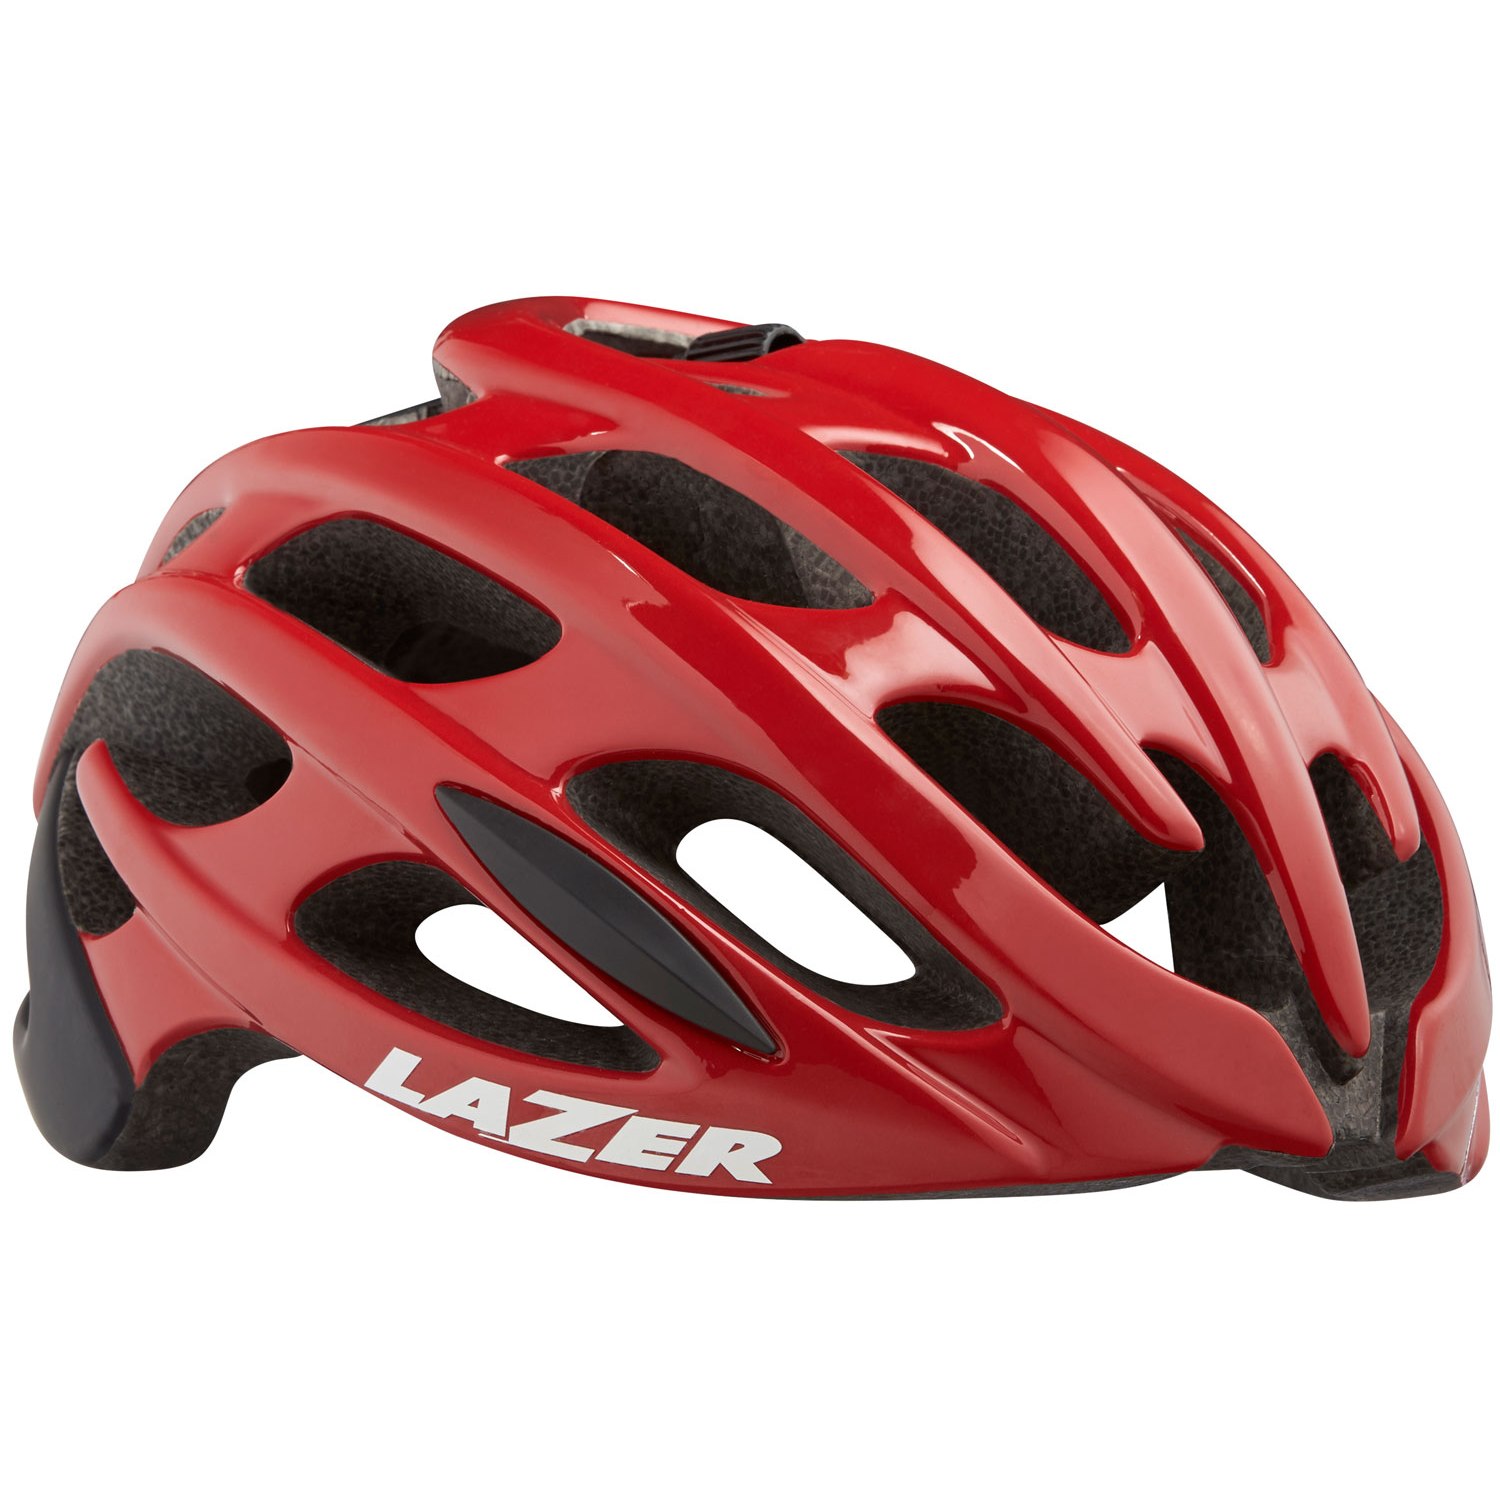 Lazer Genesis Road Helmet - red black | BIKE24